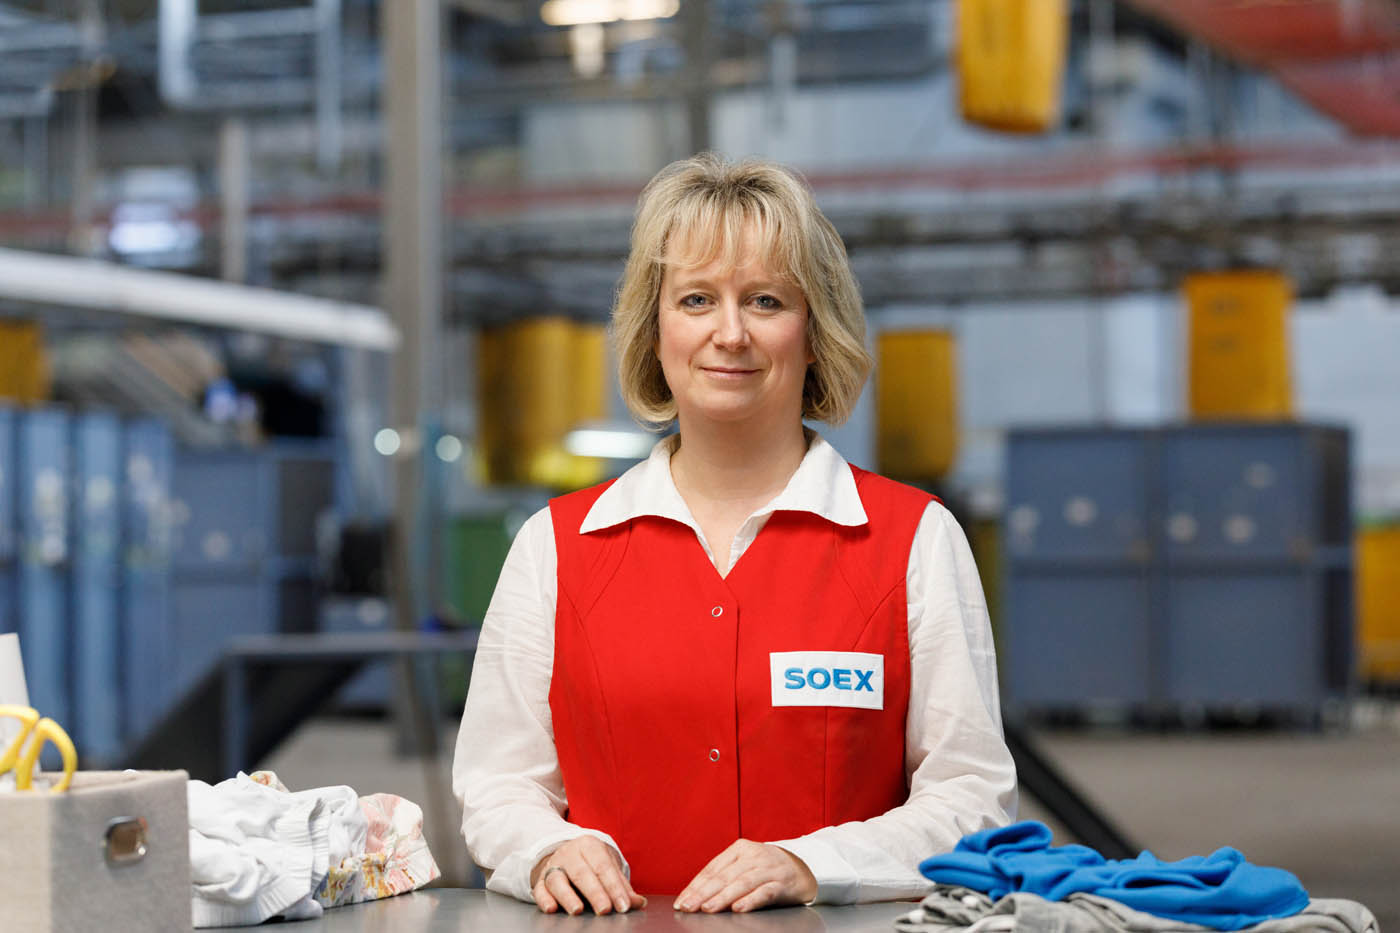 soex textilrecycling Mitarbeiterporträt Qualitätsprüfung